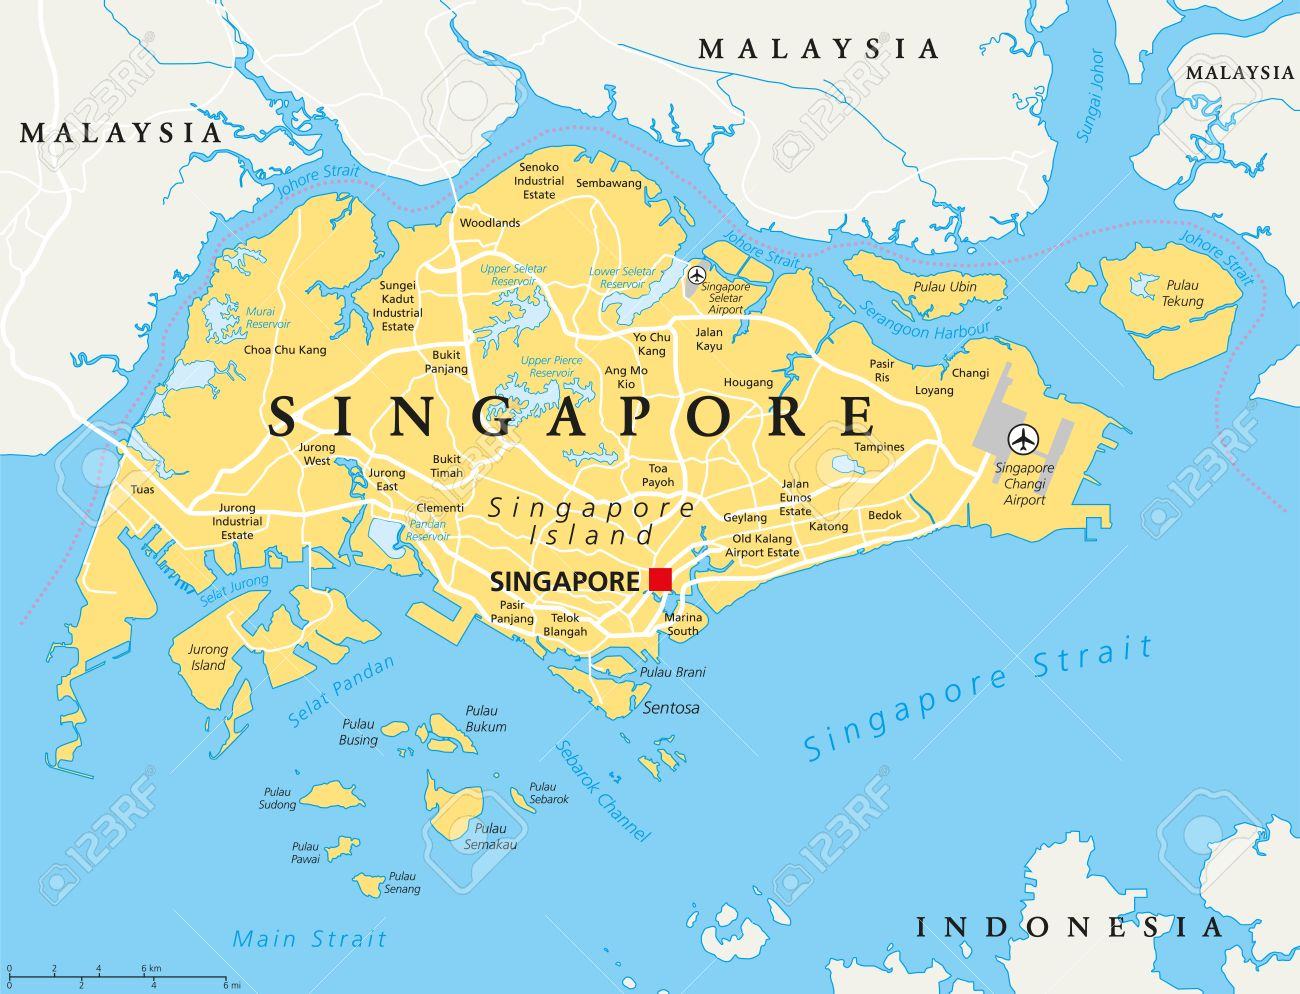 Bản đồ Singapore 2024 mang đến cho bạn cái nhìn toàn cảnh về đất nước sáng giá này, từ khu vực kinh tế trọng điểm đến những điểm du lịch nổi tiếng. Cùng khám phá và tìm hiểu những điều thú vị trên bản đồ này nhé!